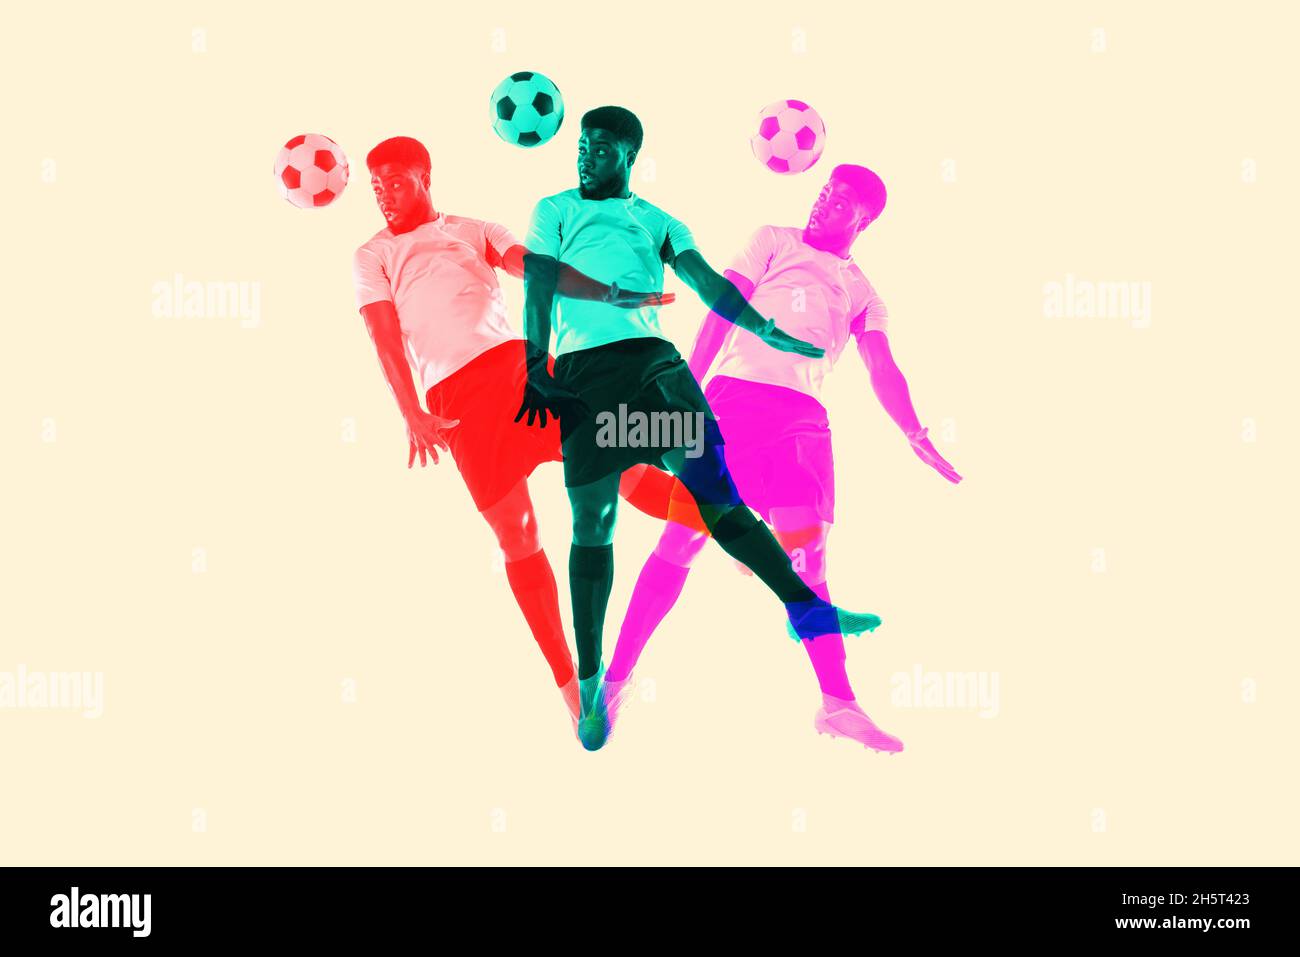 Bildmaterial. Männlicher Fußball, Fußballspieler springt mit Ball mit Glitch-Duoton-Effekt. Junges sportliches Modell und doppelte bunte Schatten Stockfoto